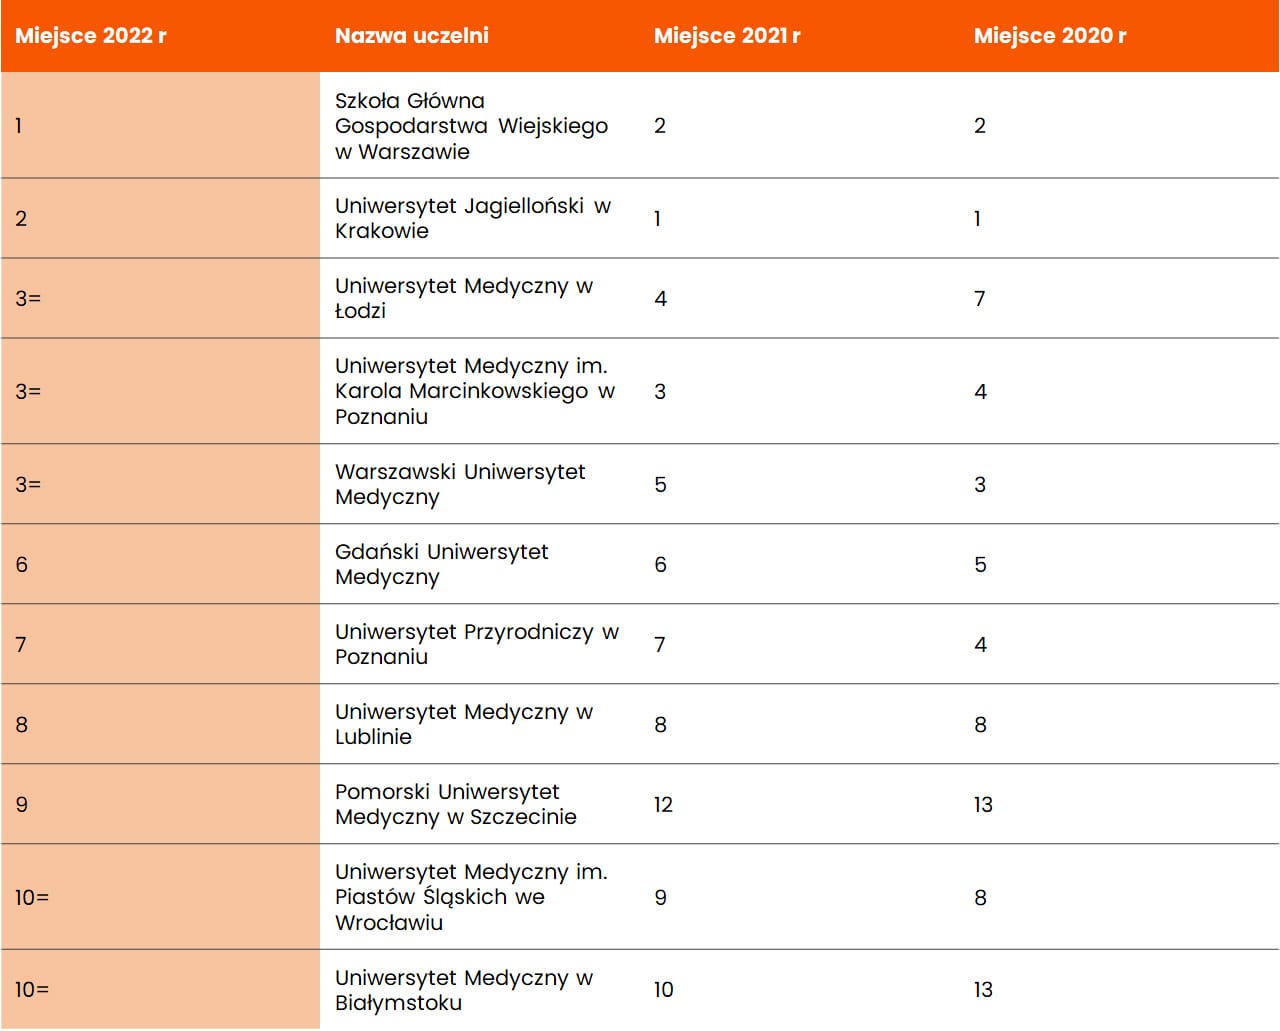 Ranking najlepszych uczelni, kierunek dietetyka, perspektywy 2022